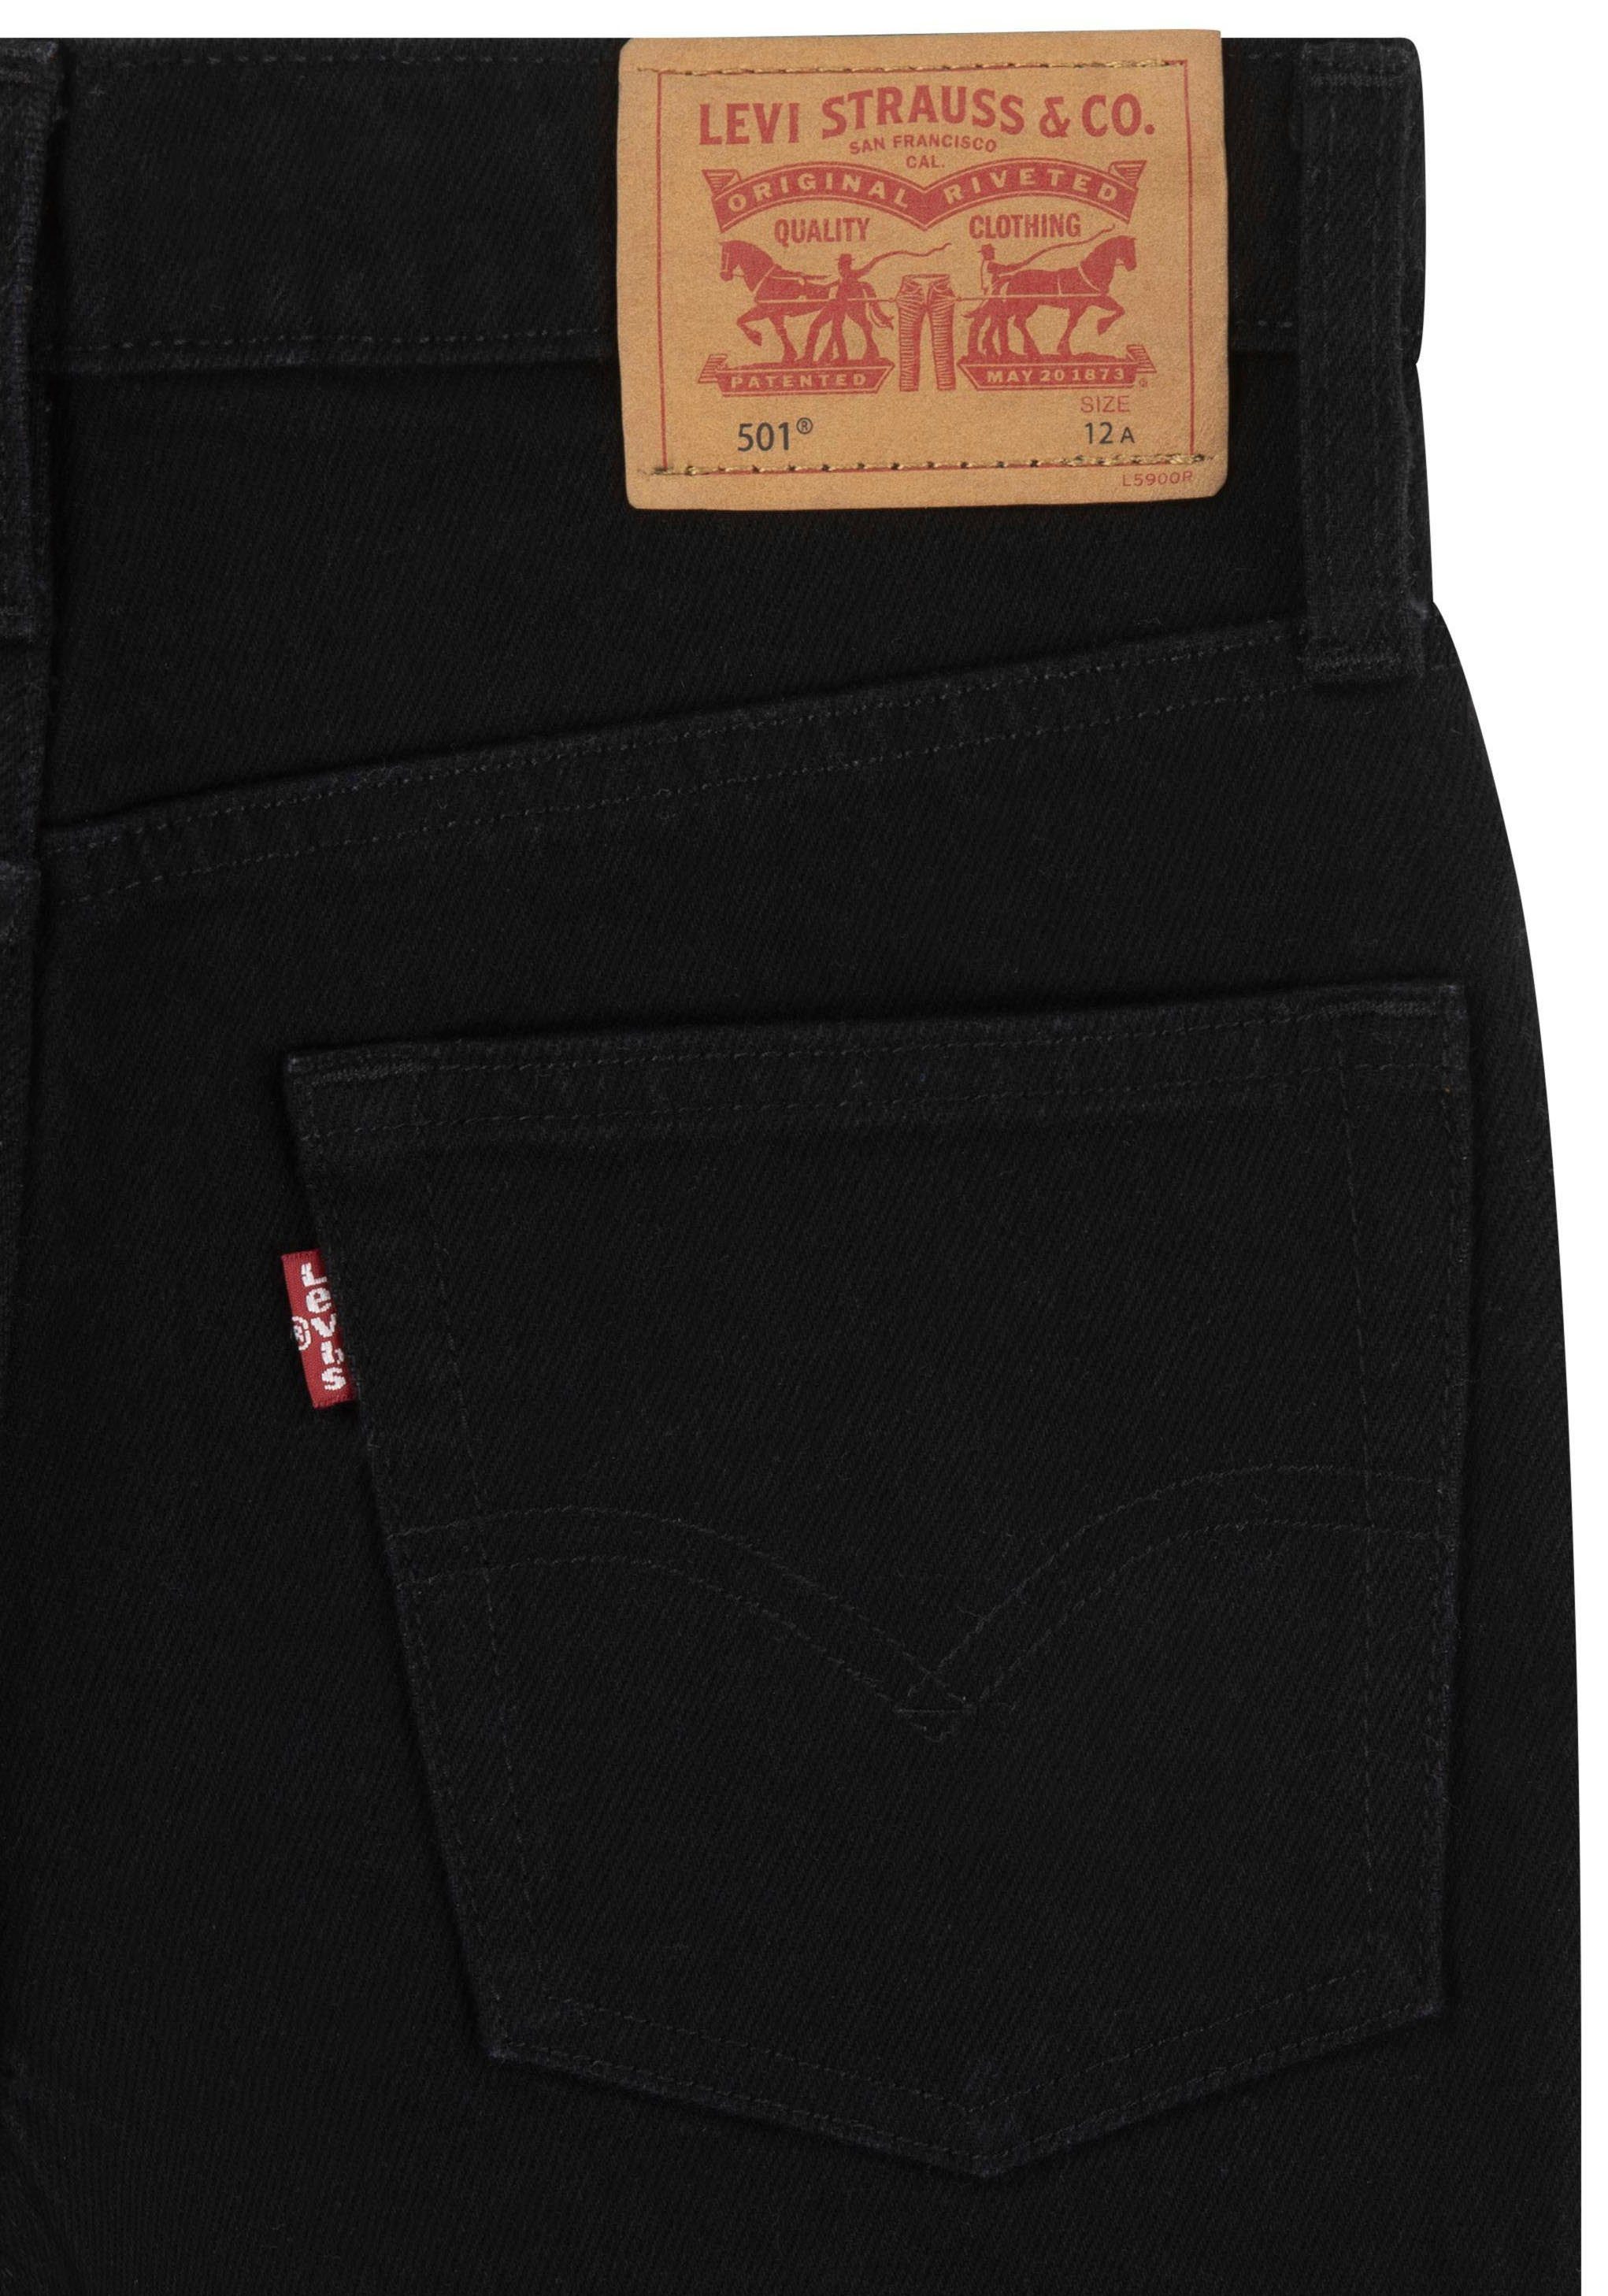 501 JEANS ORIGINAL Kids 5-Pocket-Jeans BOYS for Levi's® black